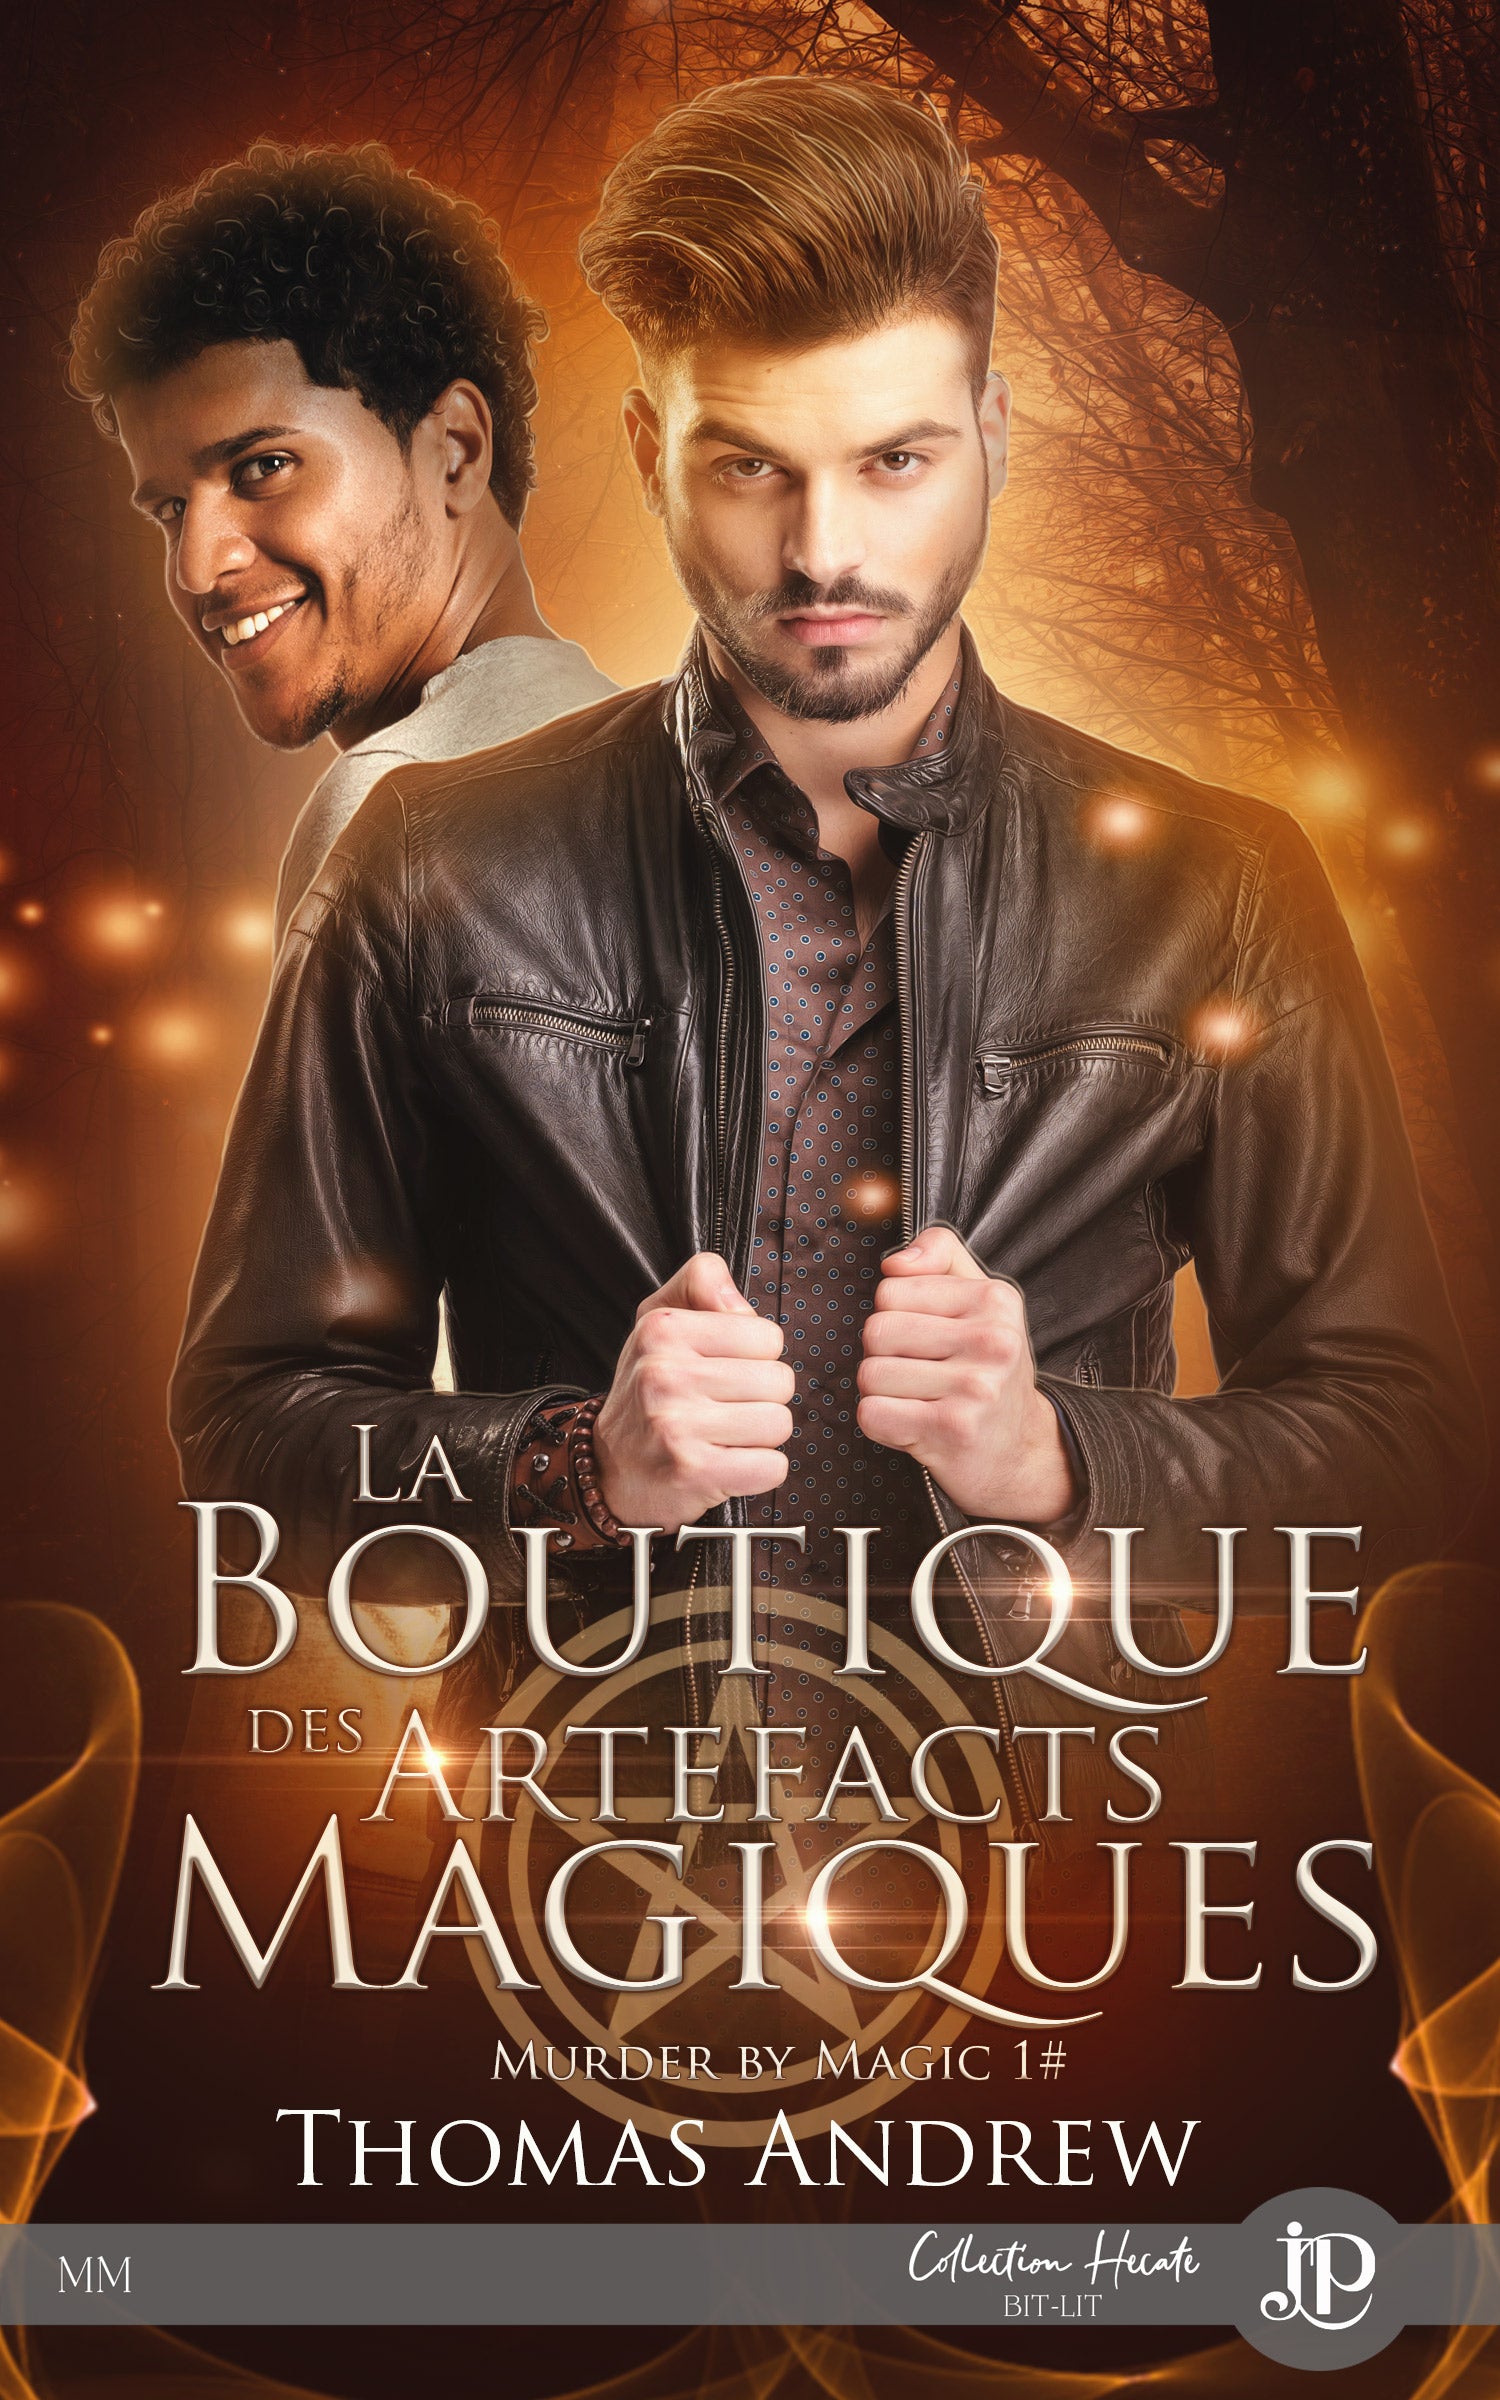 Murder by magic #1-La boutique des artefacts magiques